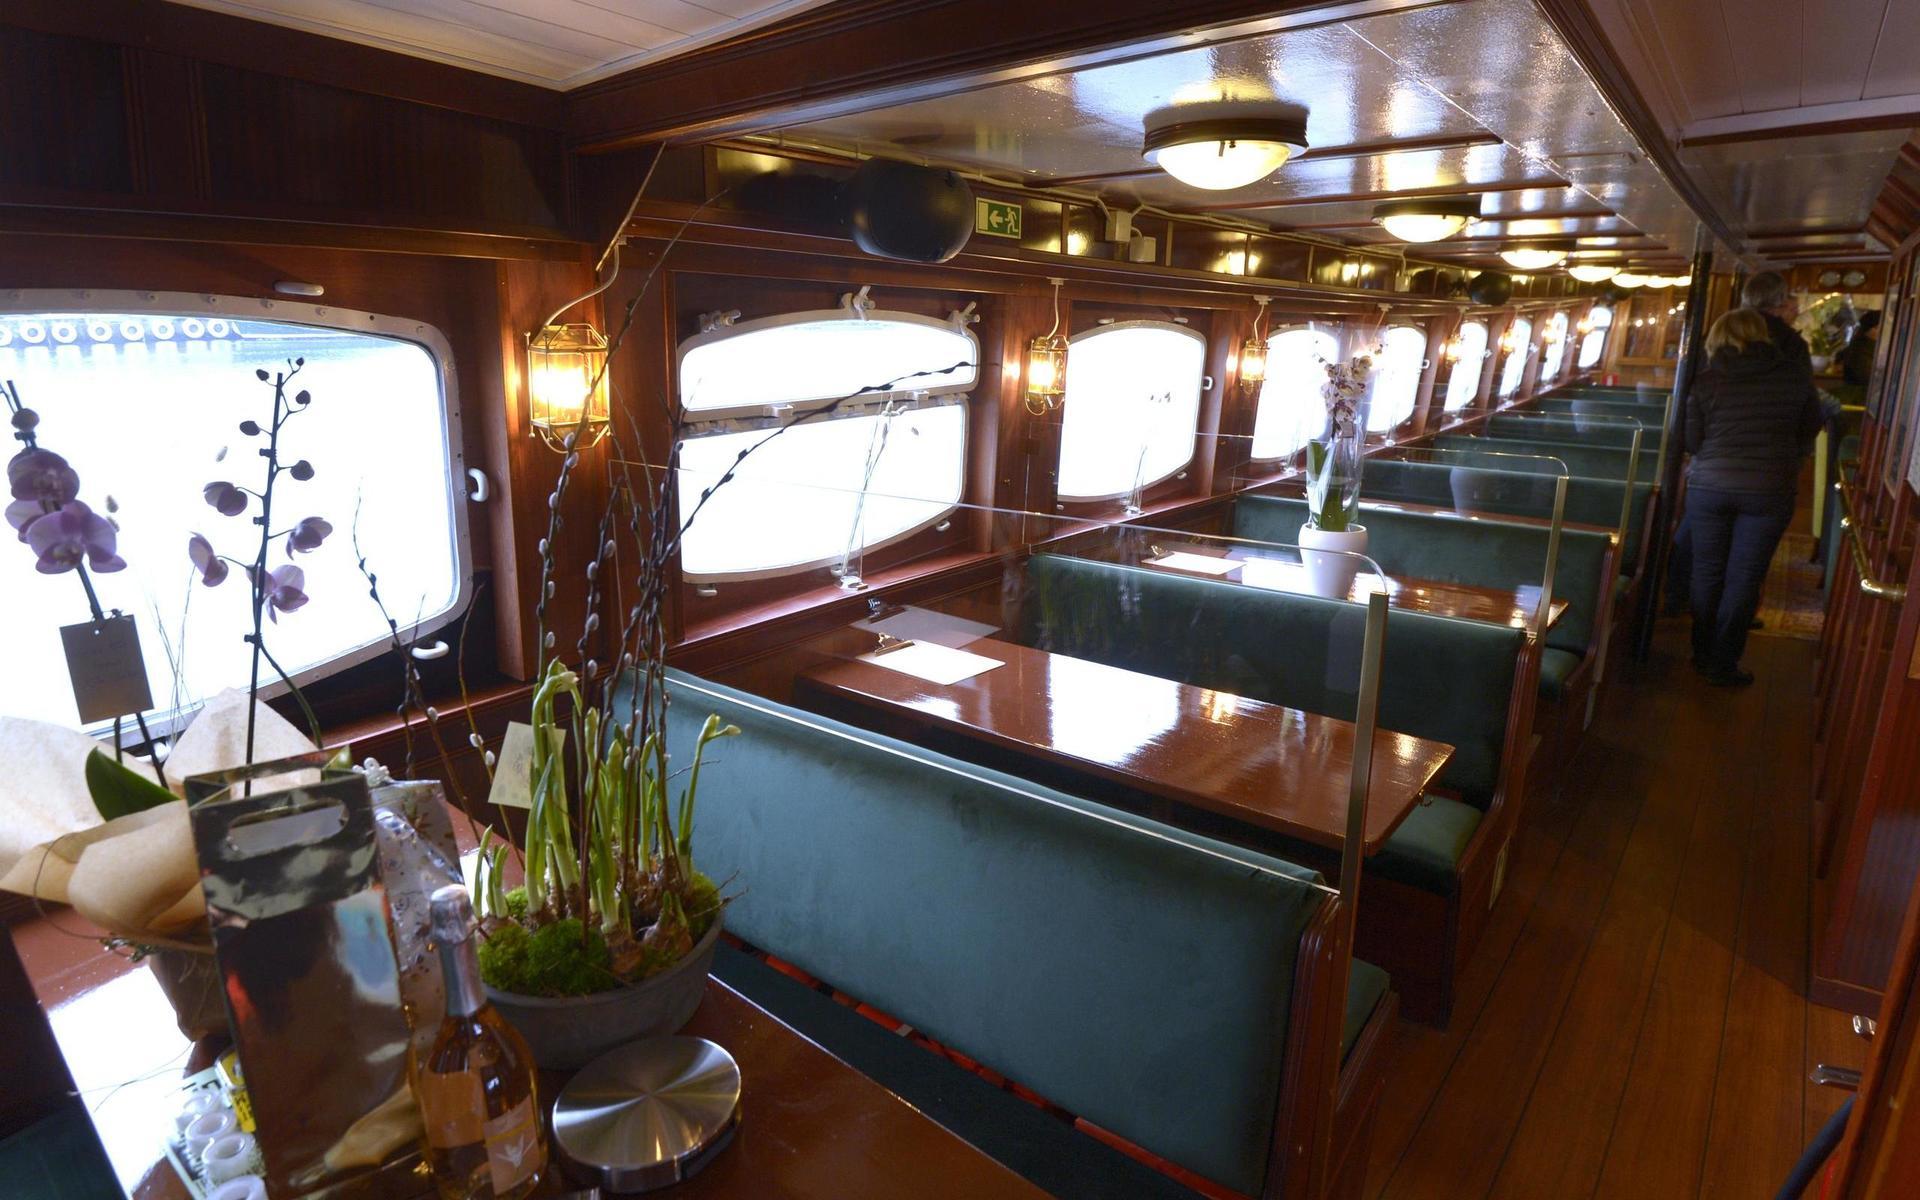 Båtens restaurangavdelning går under namnet ”Ankaret”.